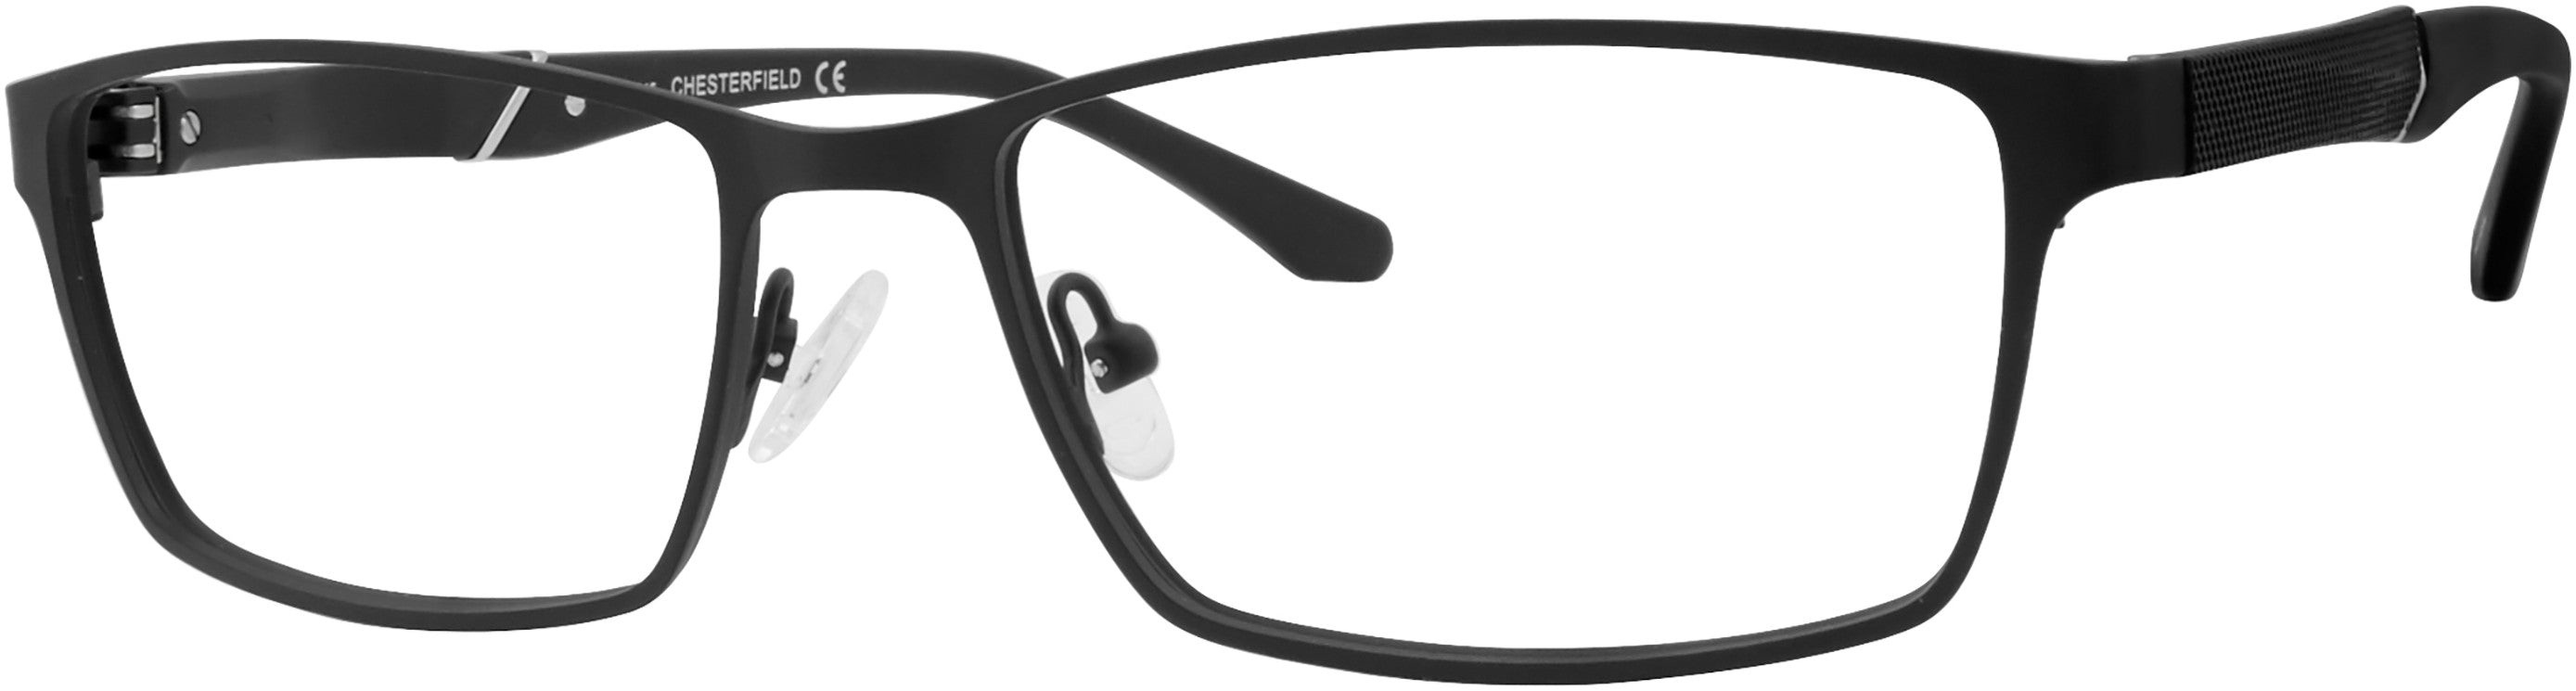  Chesterfield 67XL Rectangular Eyeglasses 0003-0003  Matte Black (00 Demo Lens)